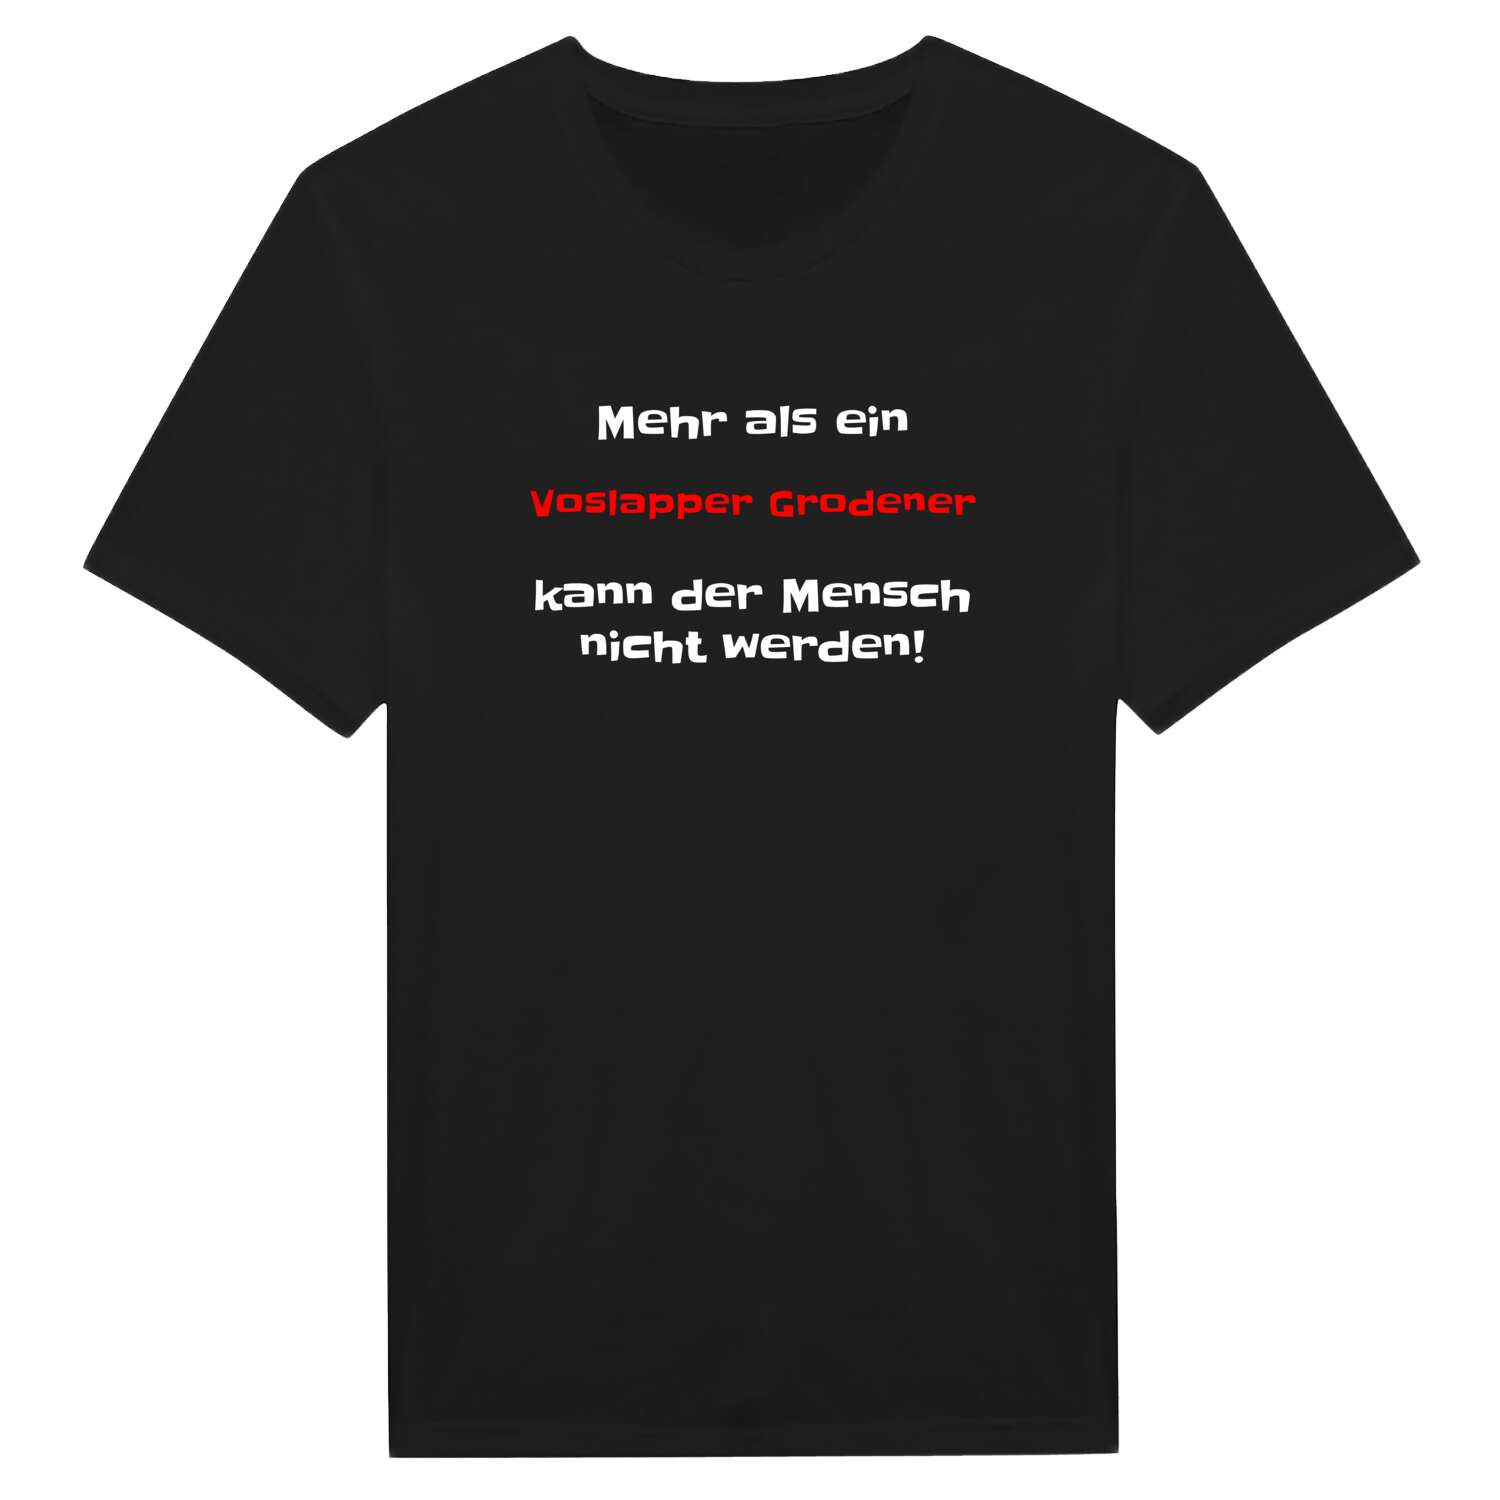 Voslapper Groden T-Shirt »Mehr als ein«